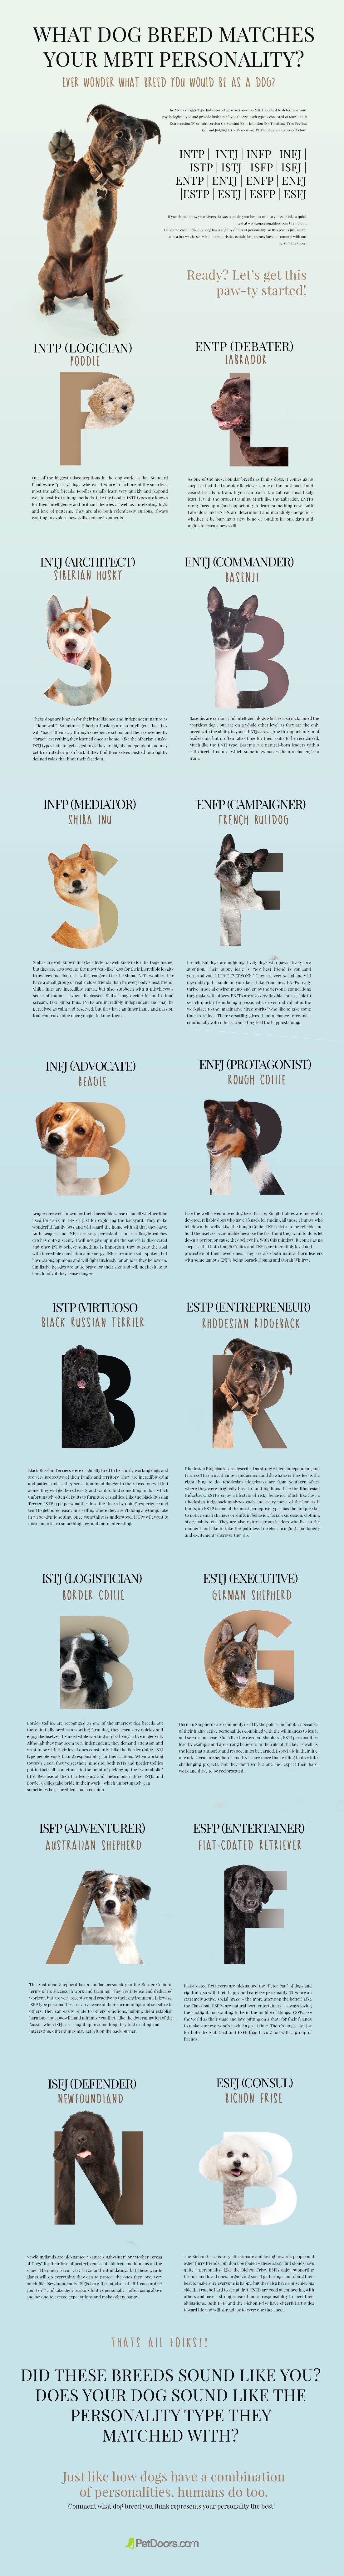 Какая порода собак соответствует вашему характеру MBTI?